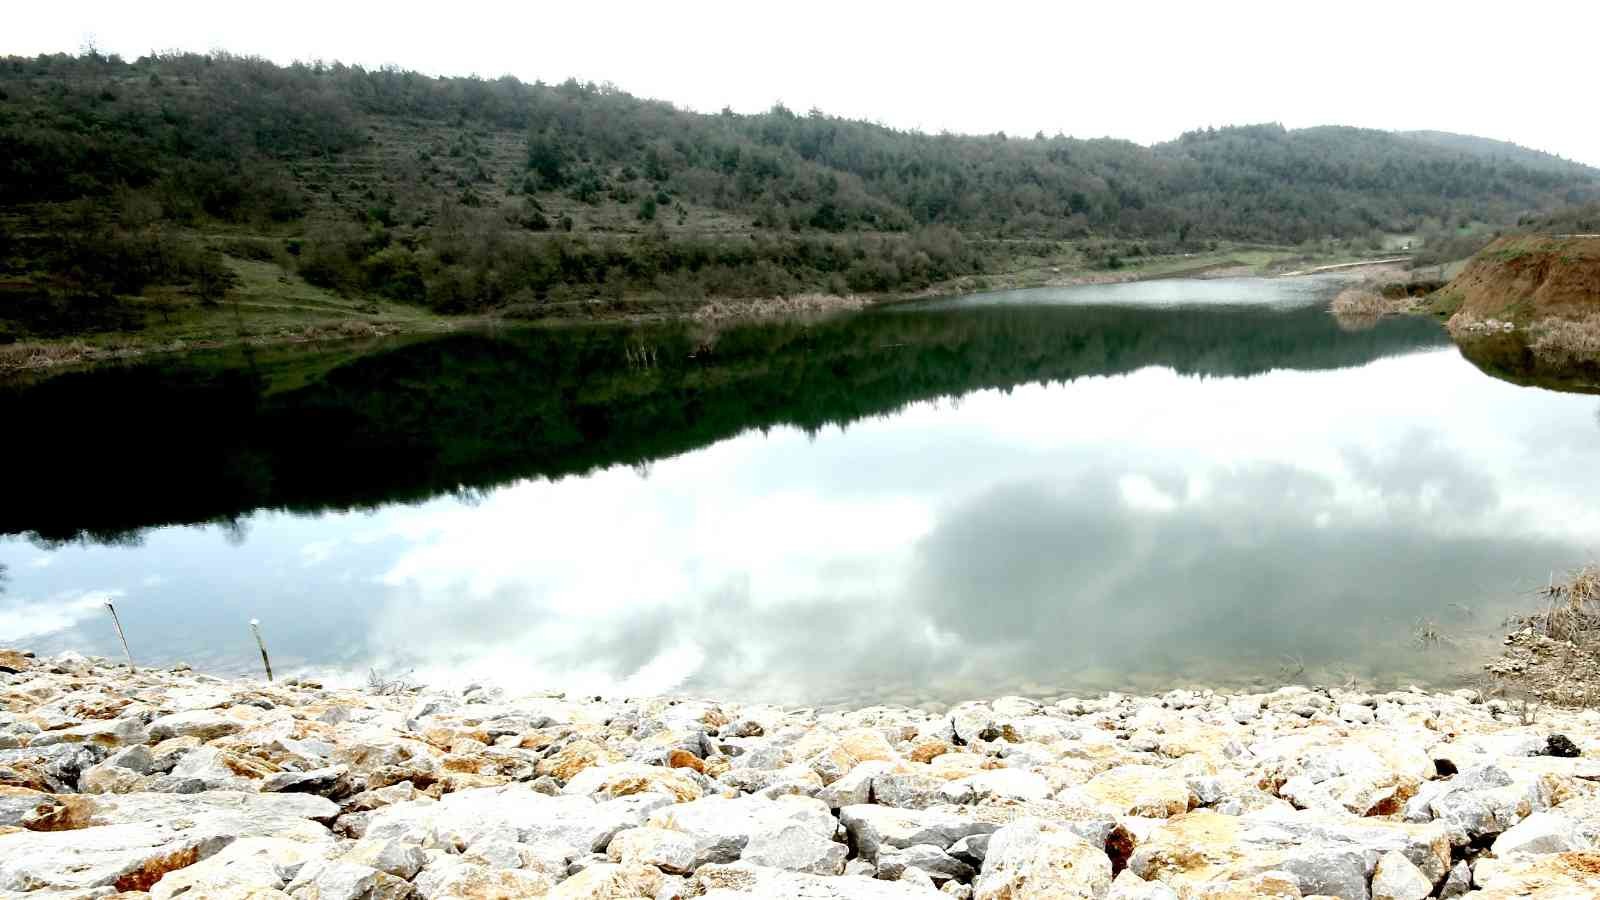 Kaynaklardan yeterli miktarda beslenemeyen Bursa Yenişehir Fethiye göletinden su çekilerek sulu tarım yapılması yasaklandı. Bu sezon kuraklıkla ...